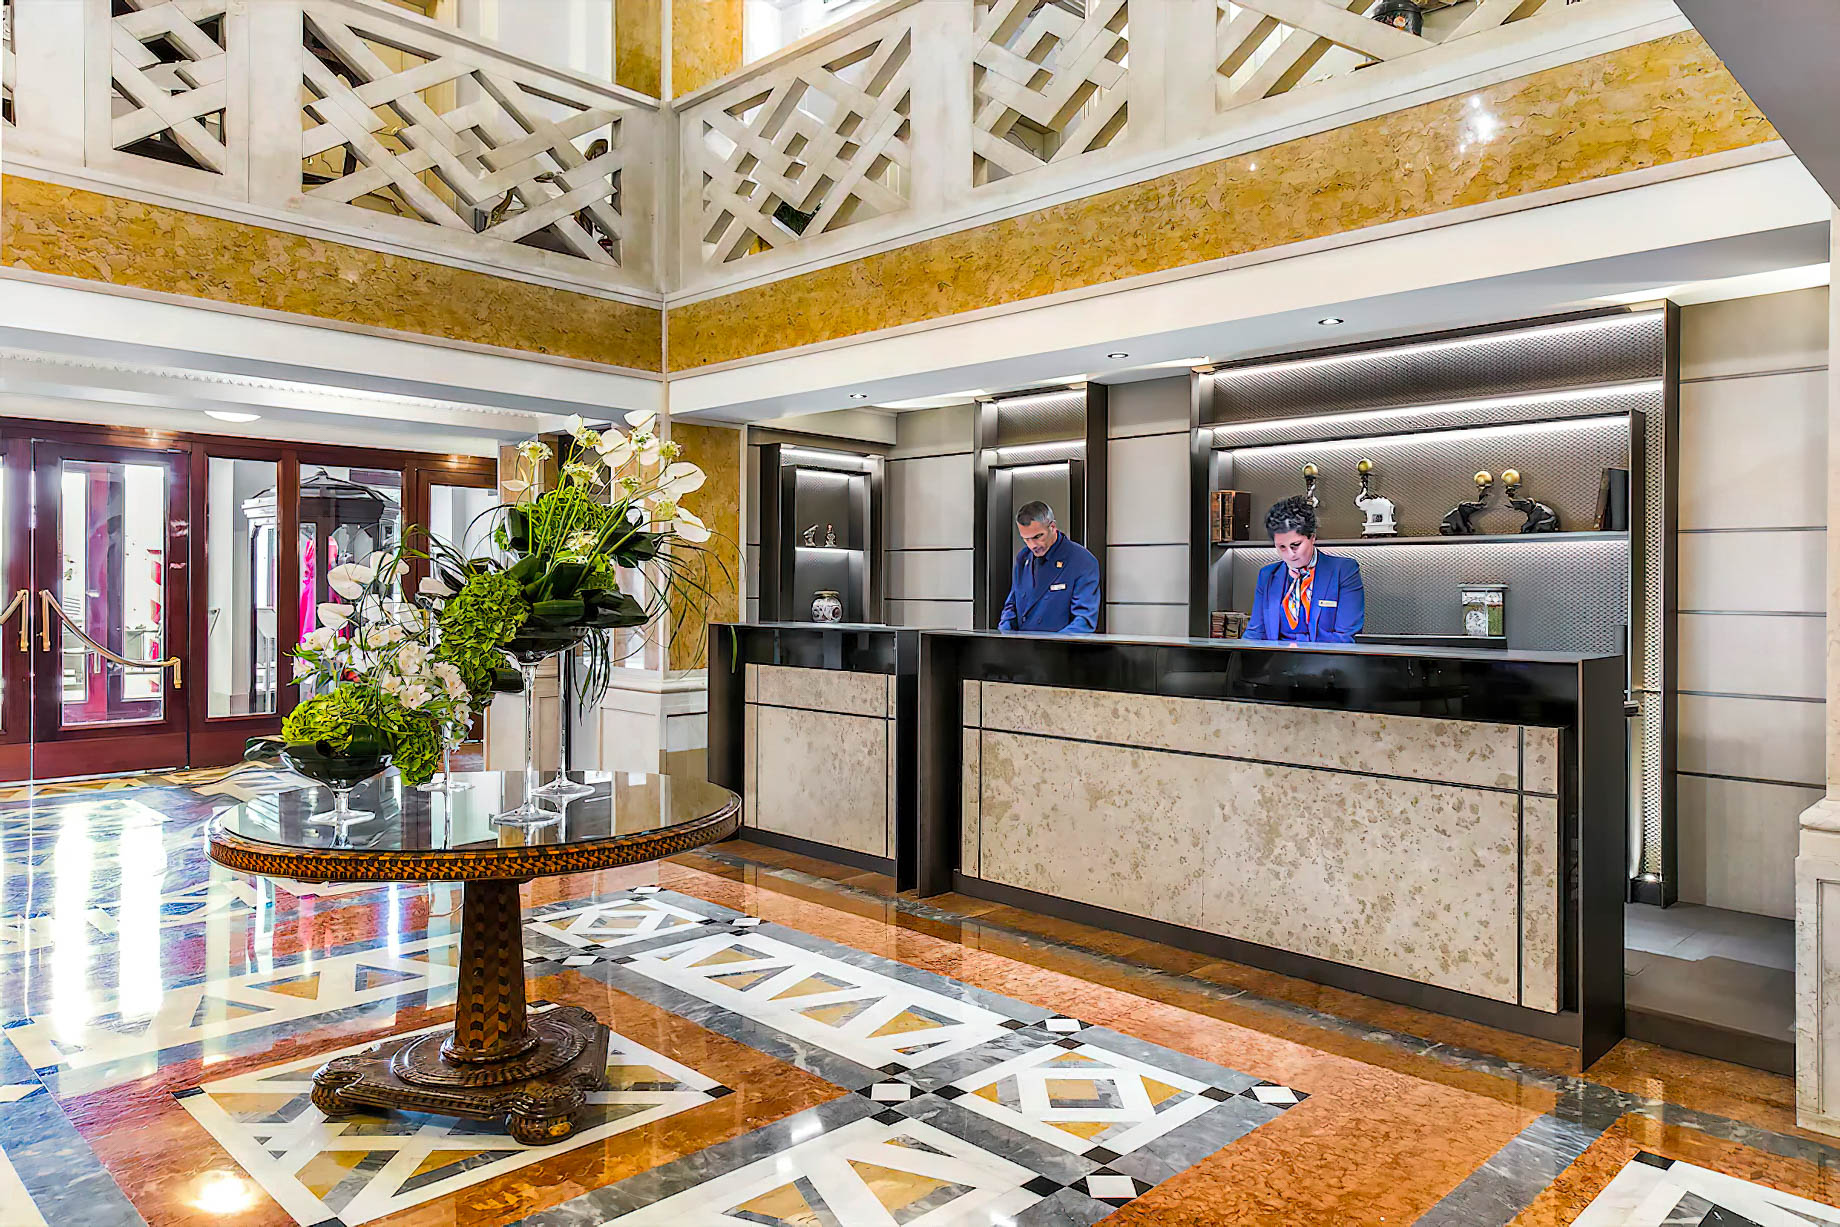 Baglioni Hotel Luna, Venezia – Venice, Italy – Lobby Reception